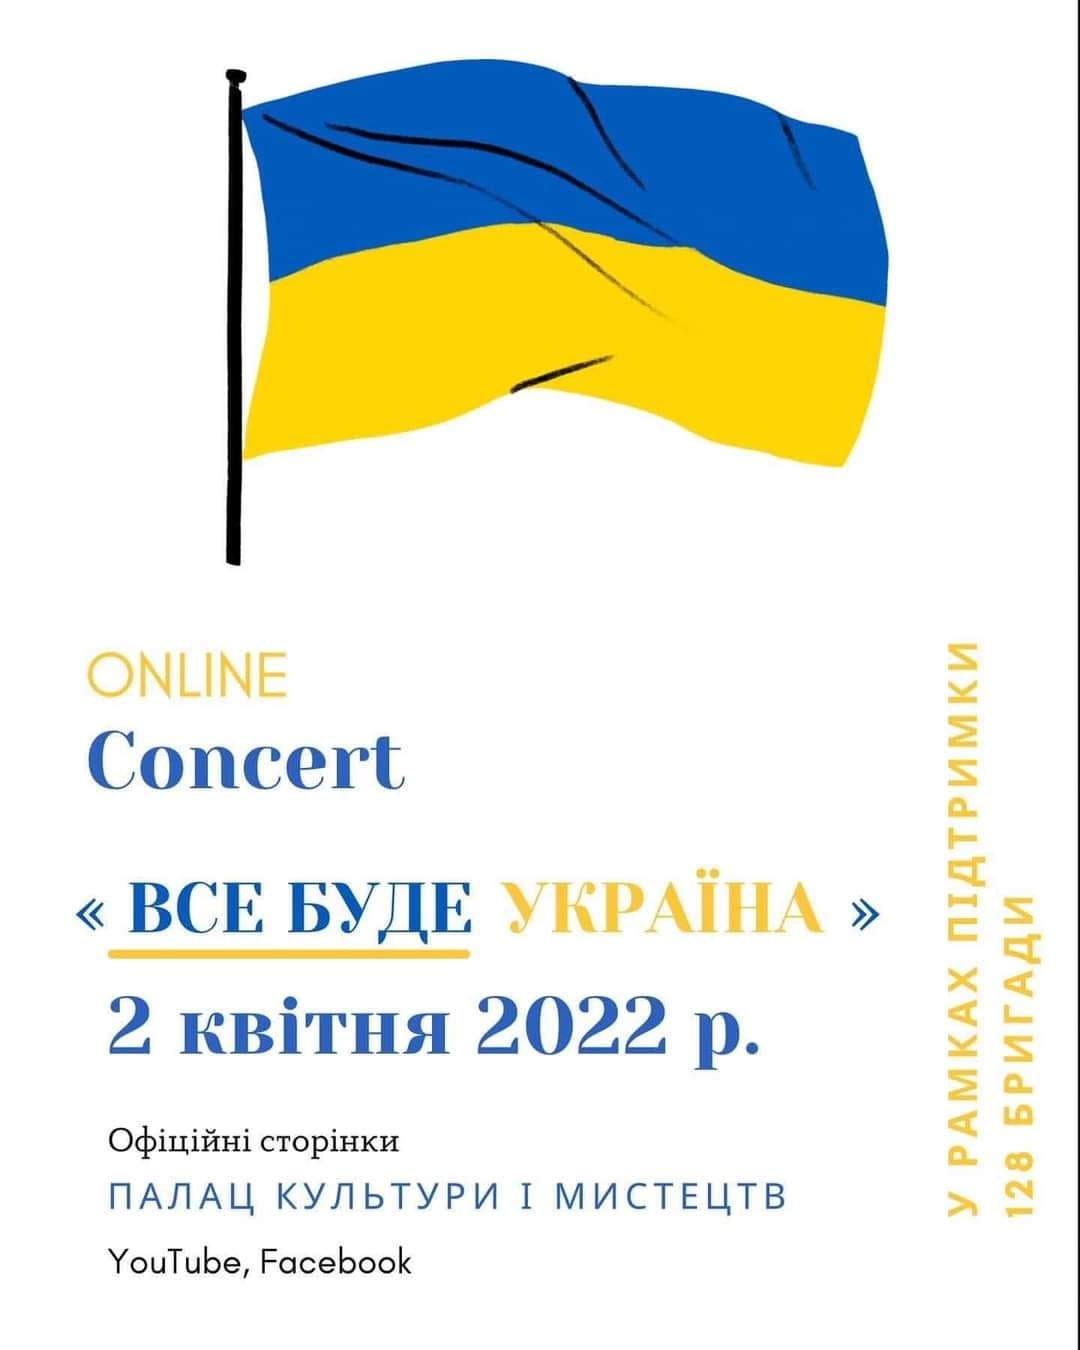 Во Дворце культуры и искусств состоится онлайн-концерт «Все будет Украина» в поддержку 128-й отдельной горно-штурмовой бригады.